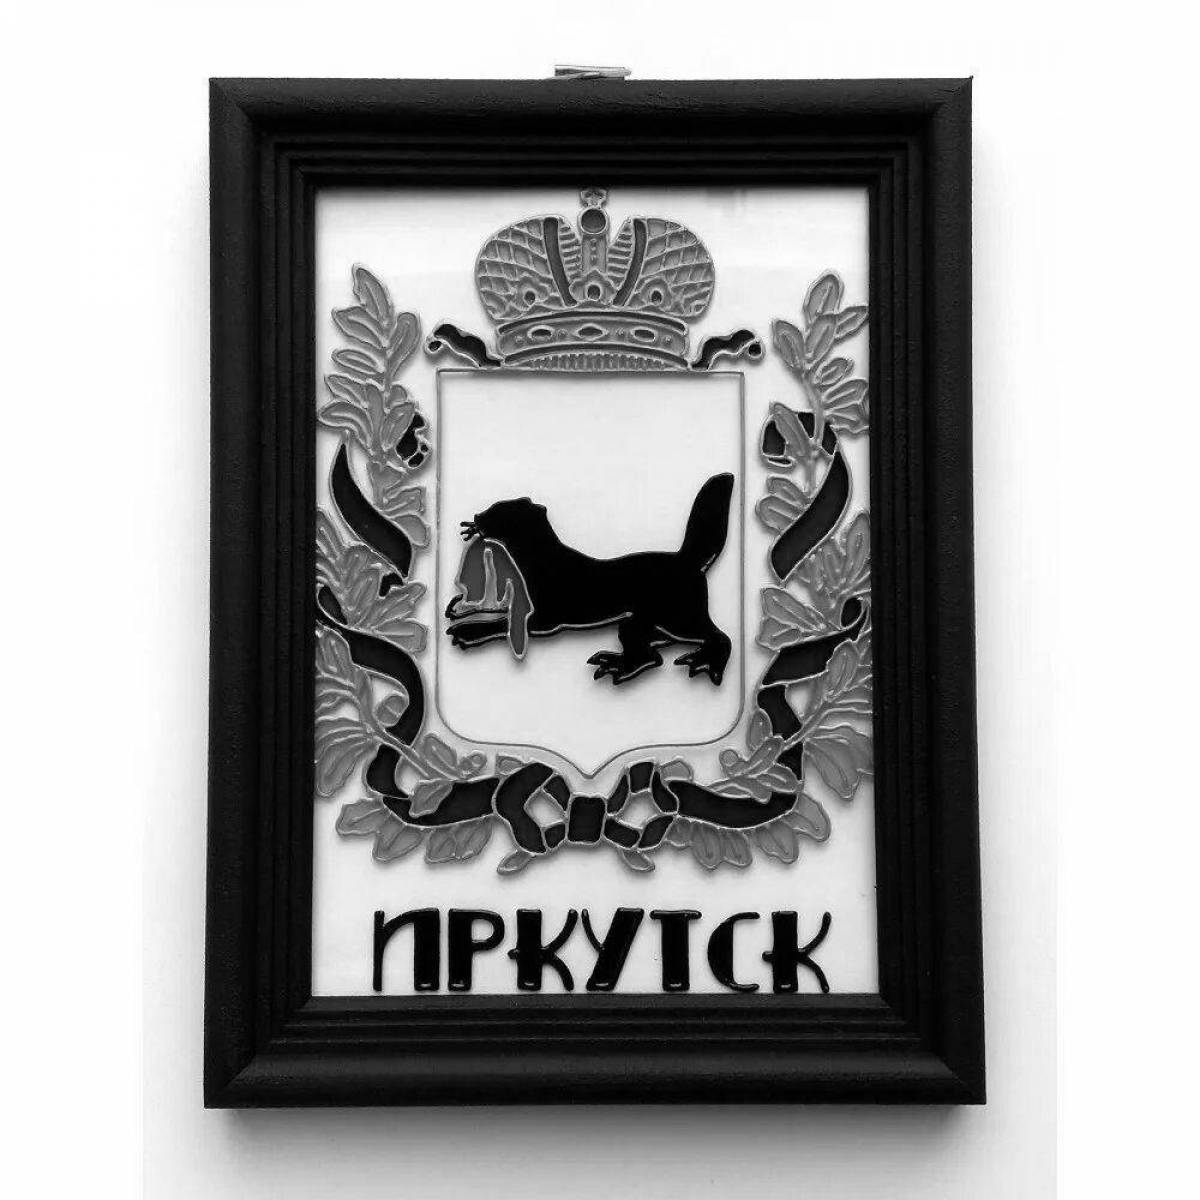 Brilliant coloring coat of arms of irkutsk